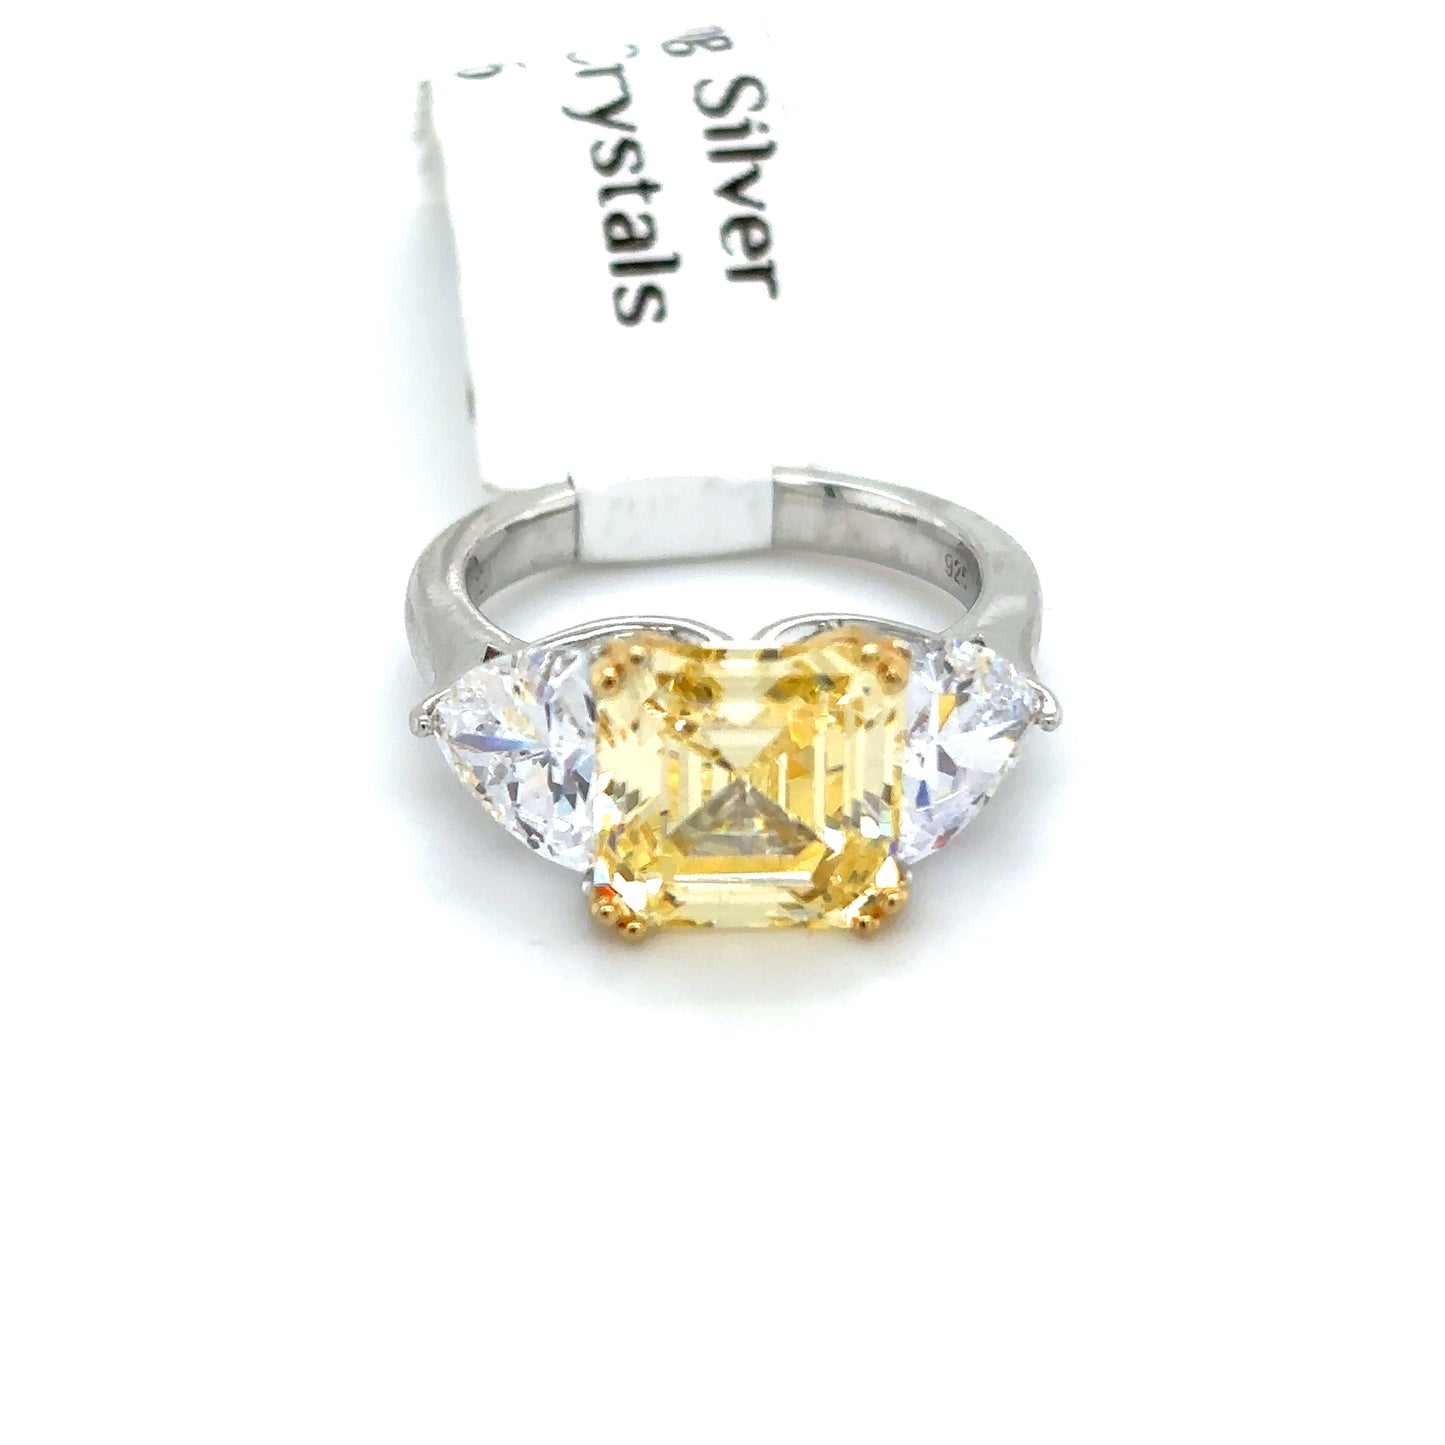 925 S.S. Swarovski Crystal Ring